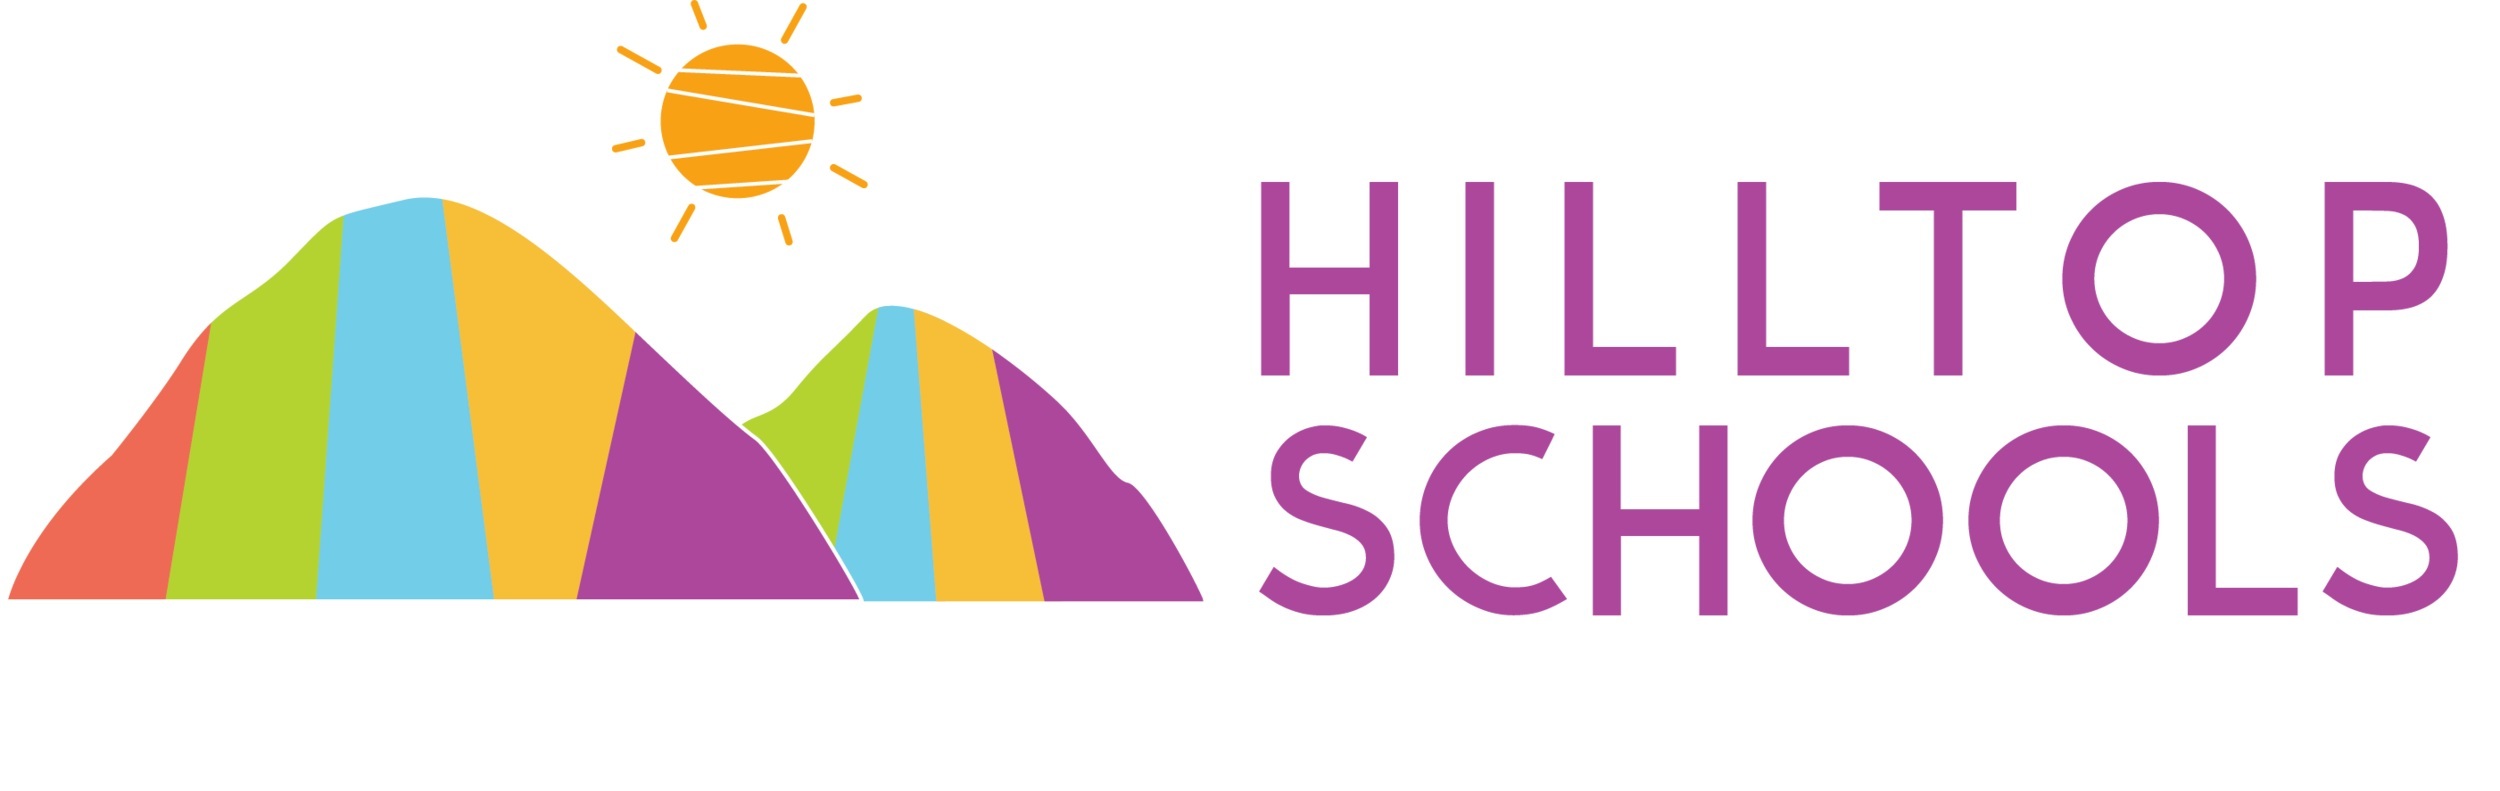 HILLTOP SCHOOLS